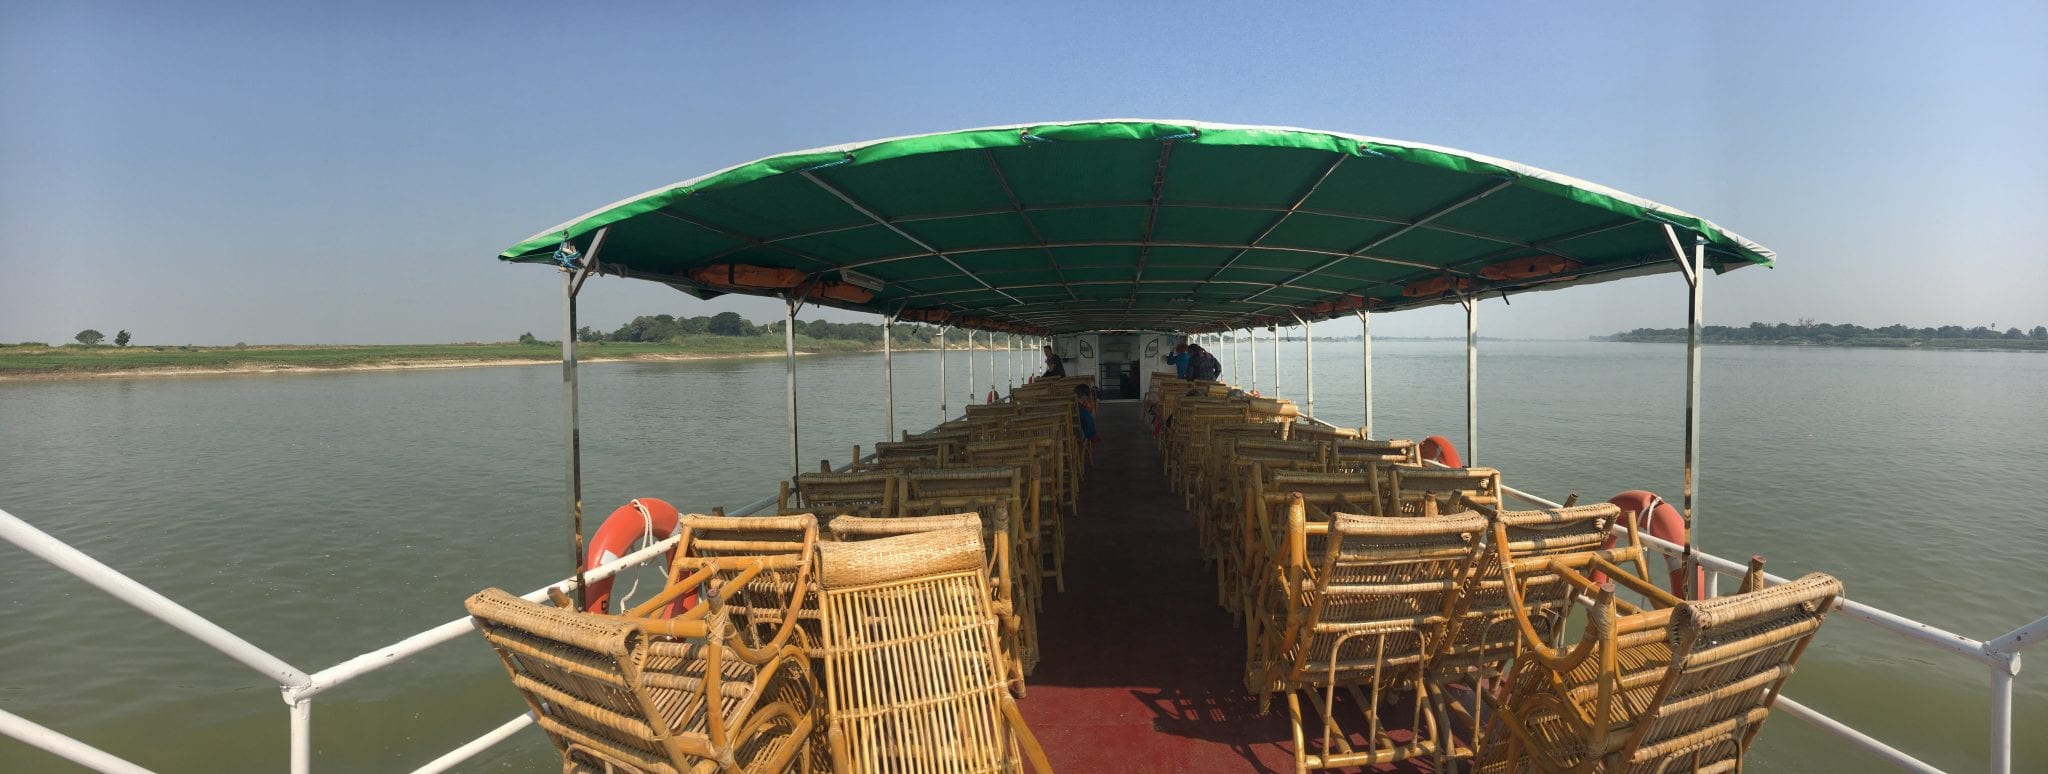 MGRG Express Bagan to Mandalay by Boat